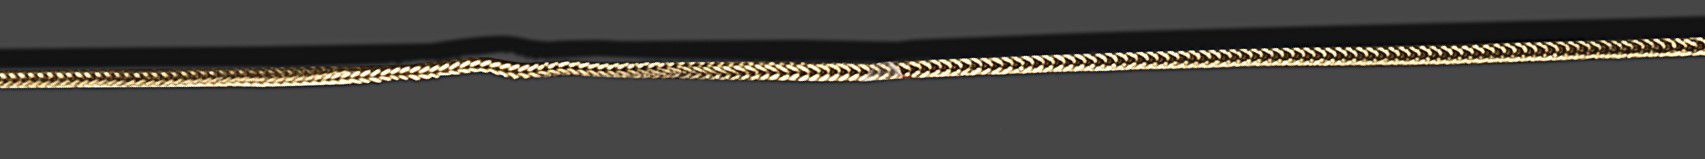 Null 18K(750)黄金项链，柱状链接。
长度 : 56 cm
毛重 : 4,58 g